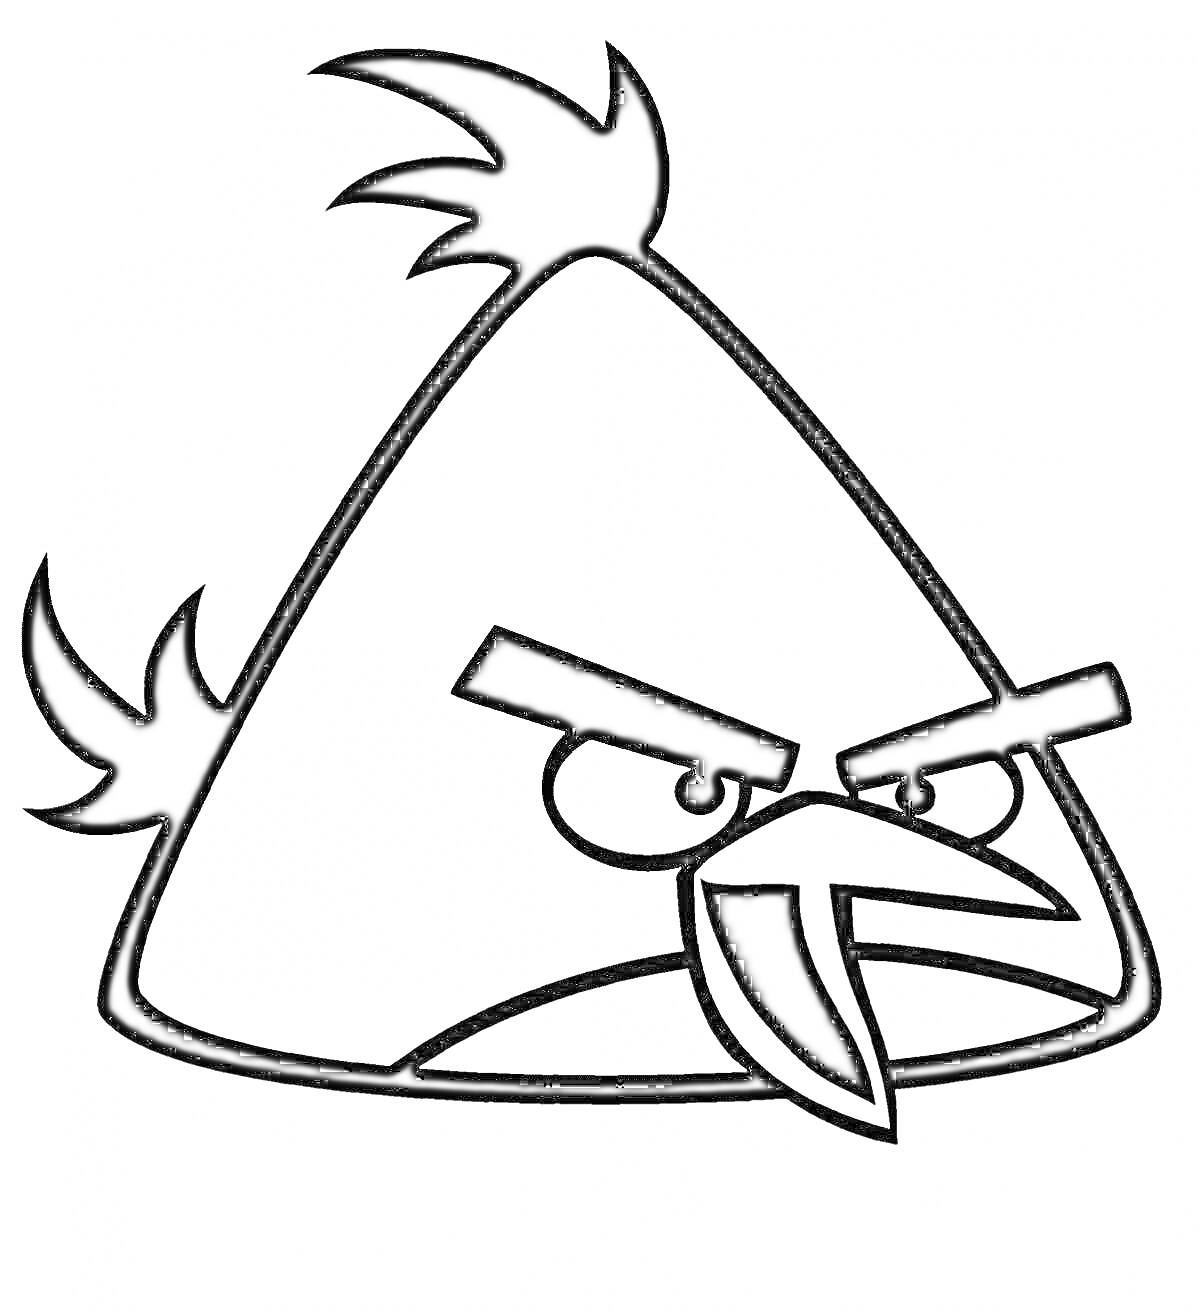 Раскраска Треугольная птичка с хохолками и сердитым выражением лица из Angry Birds